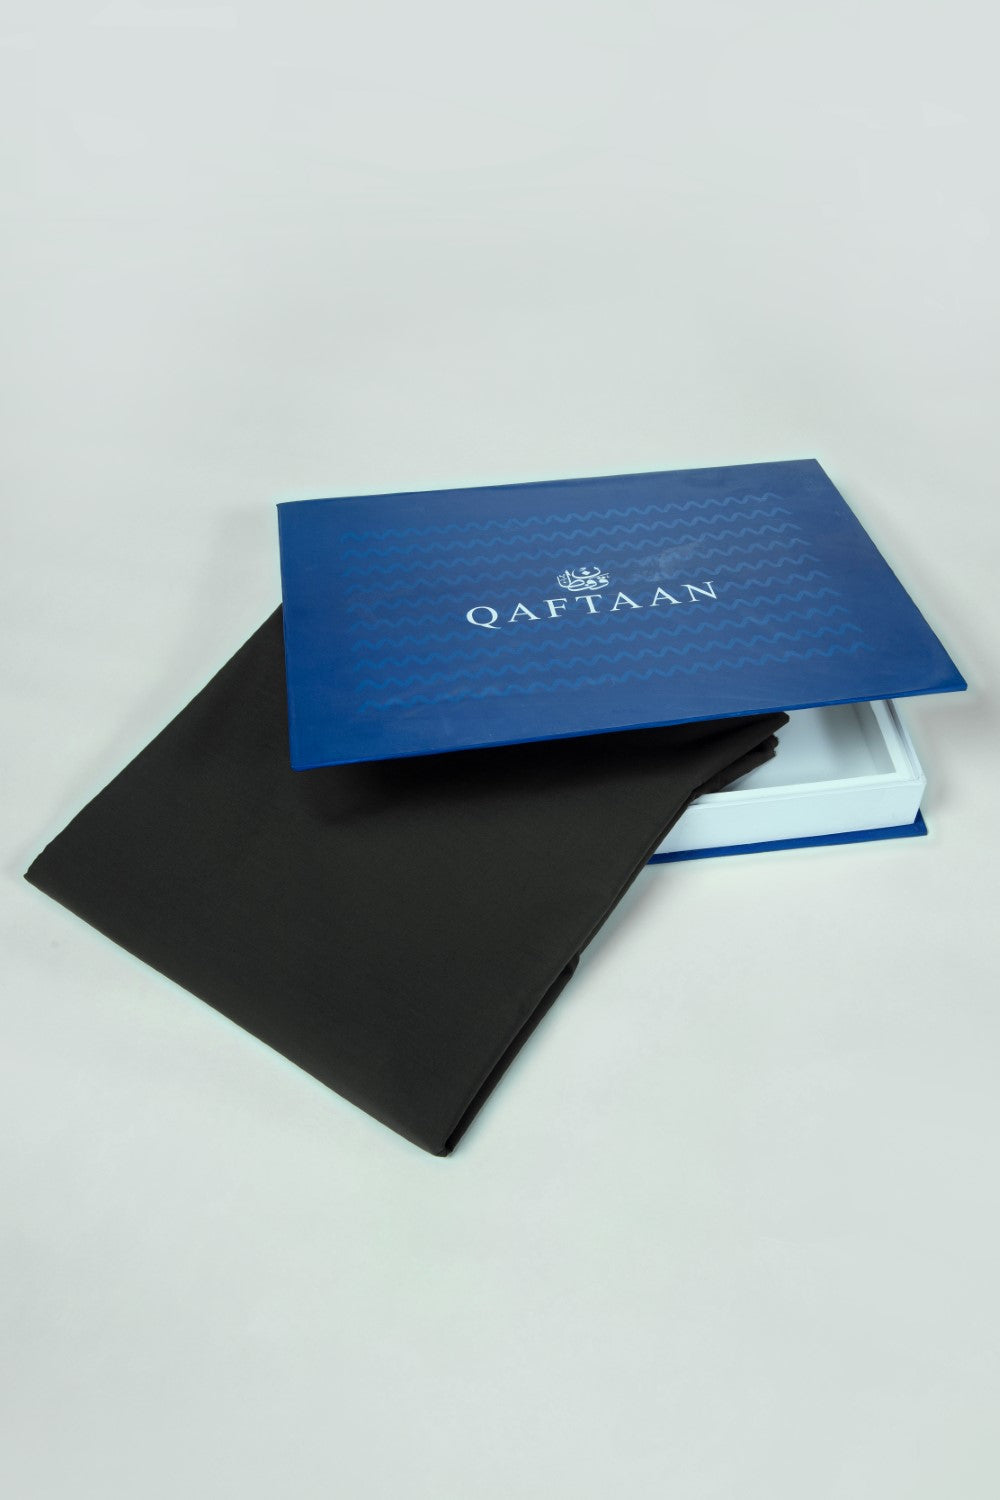 Unstitched Qaftan Suit